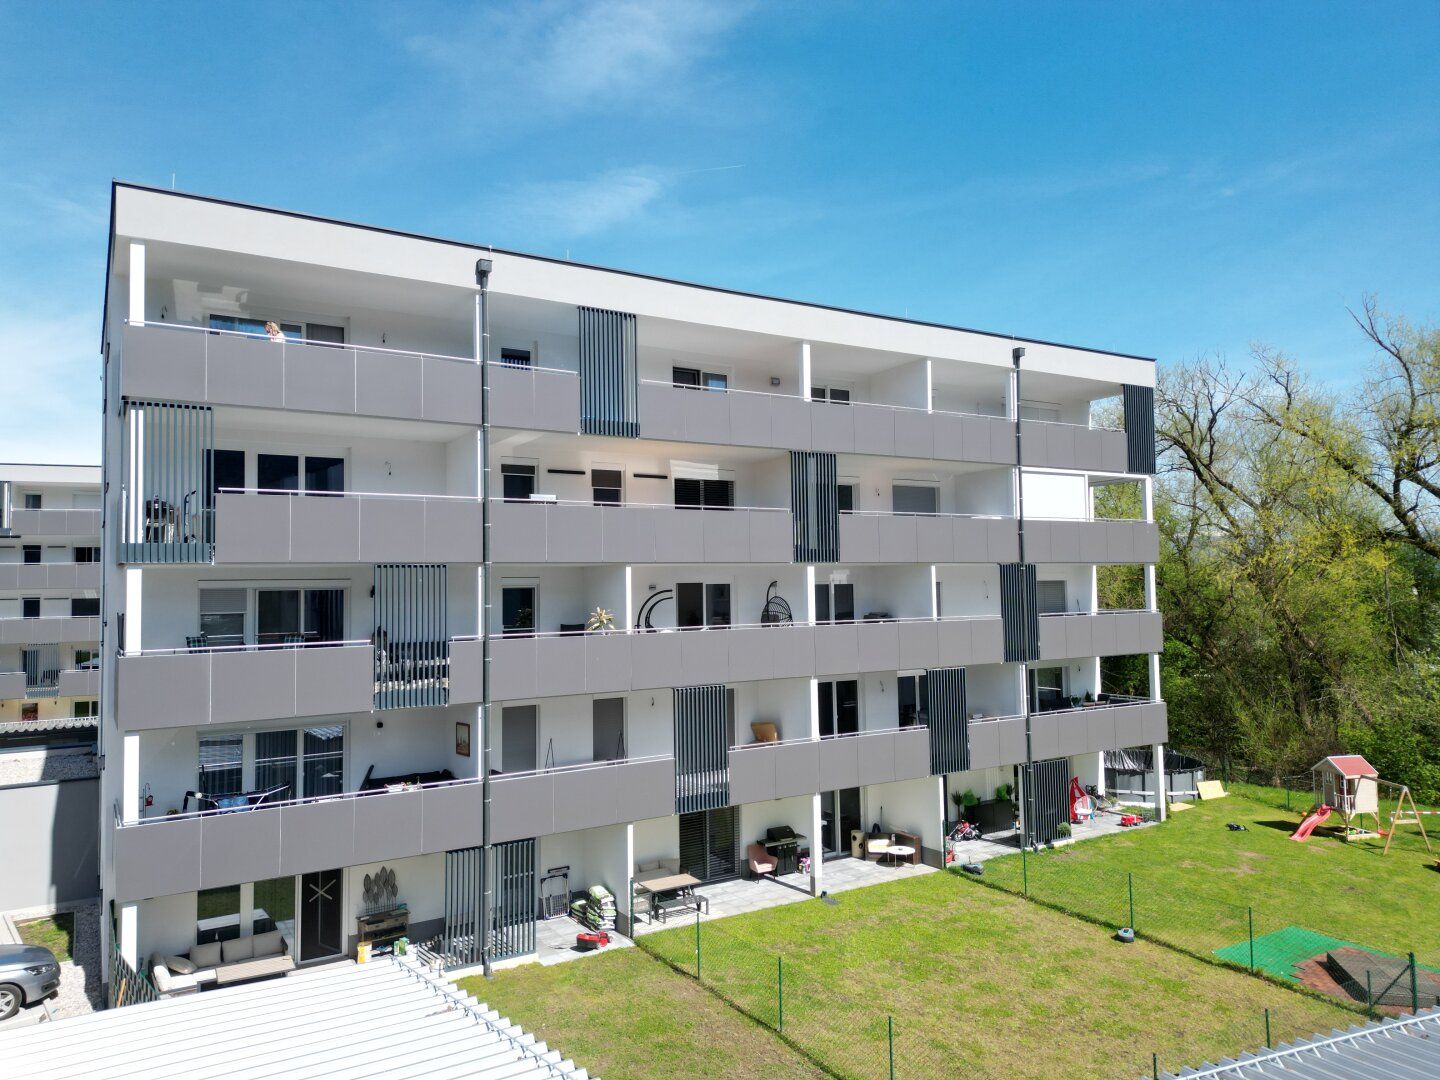 Begehrte & elegante Neubauwohnung in Grünlage mit riesigem 18,5qm Balkon, Fußbodenheizung & Badewanne und sonniger Südostlage in Ebenthal bei Klagenfurt